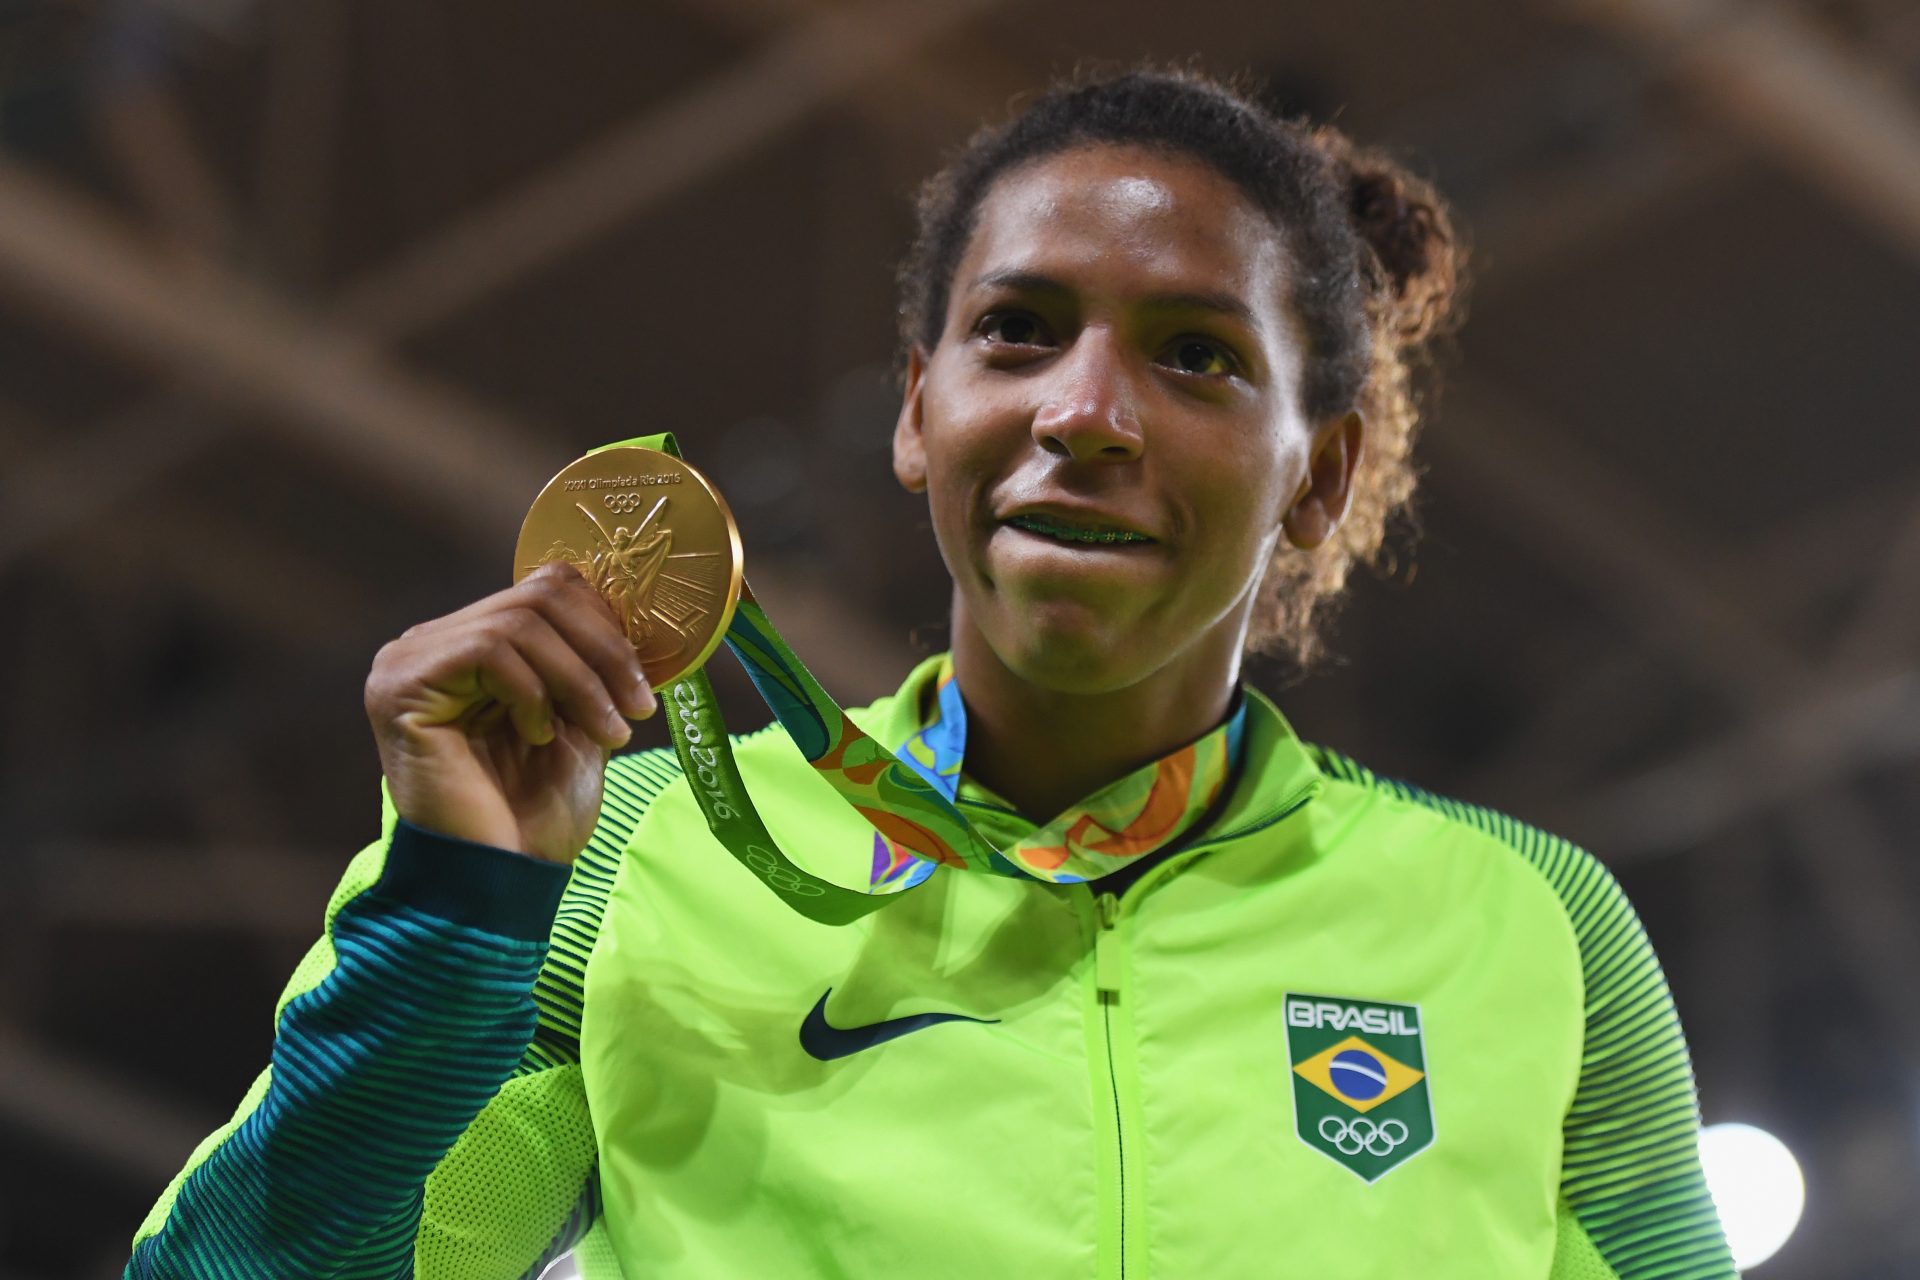 O ouro olímpico no RJ - 2016